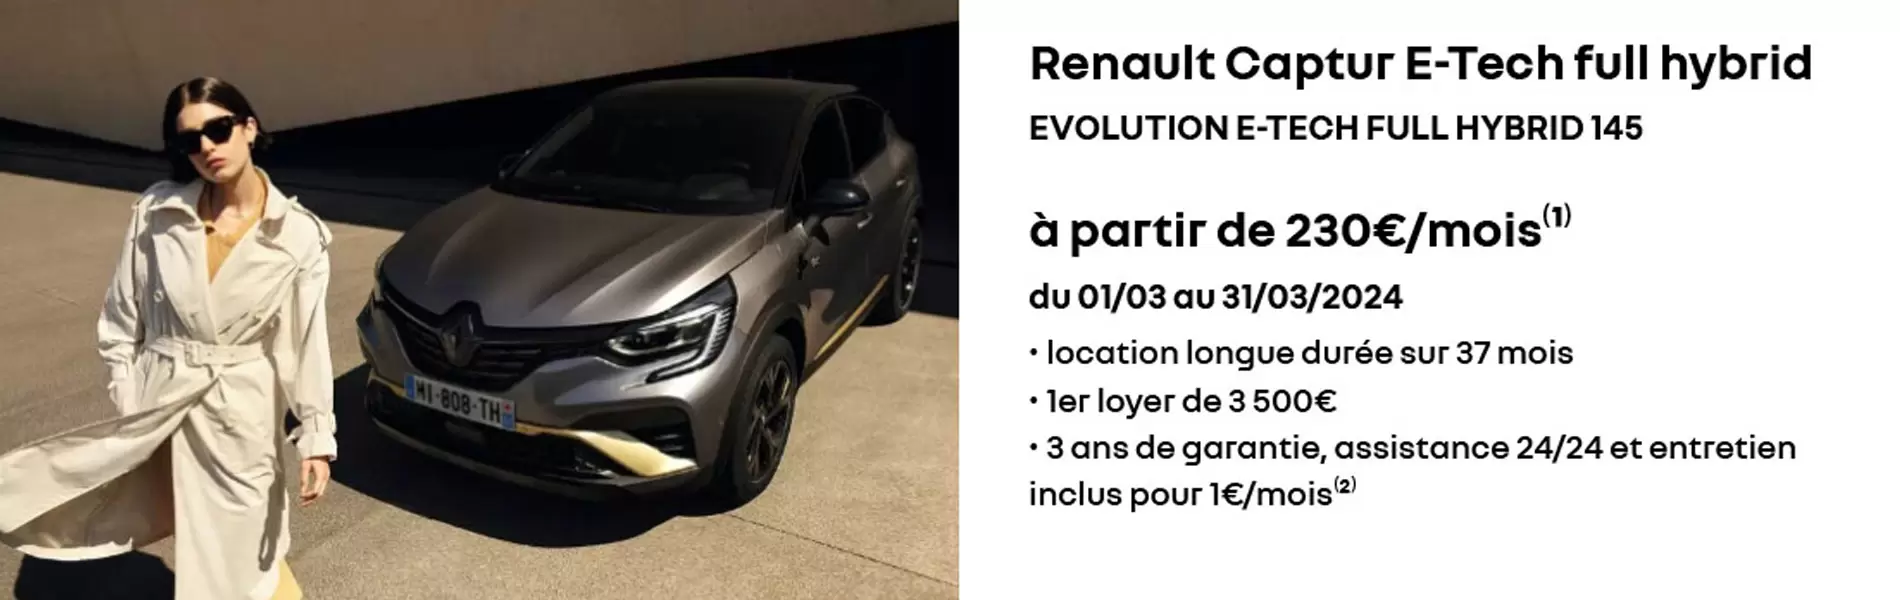 Renault captur e-tech